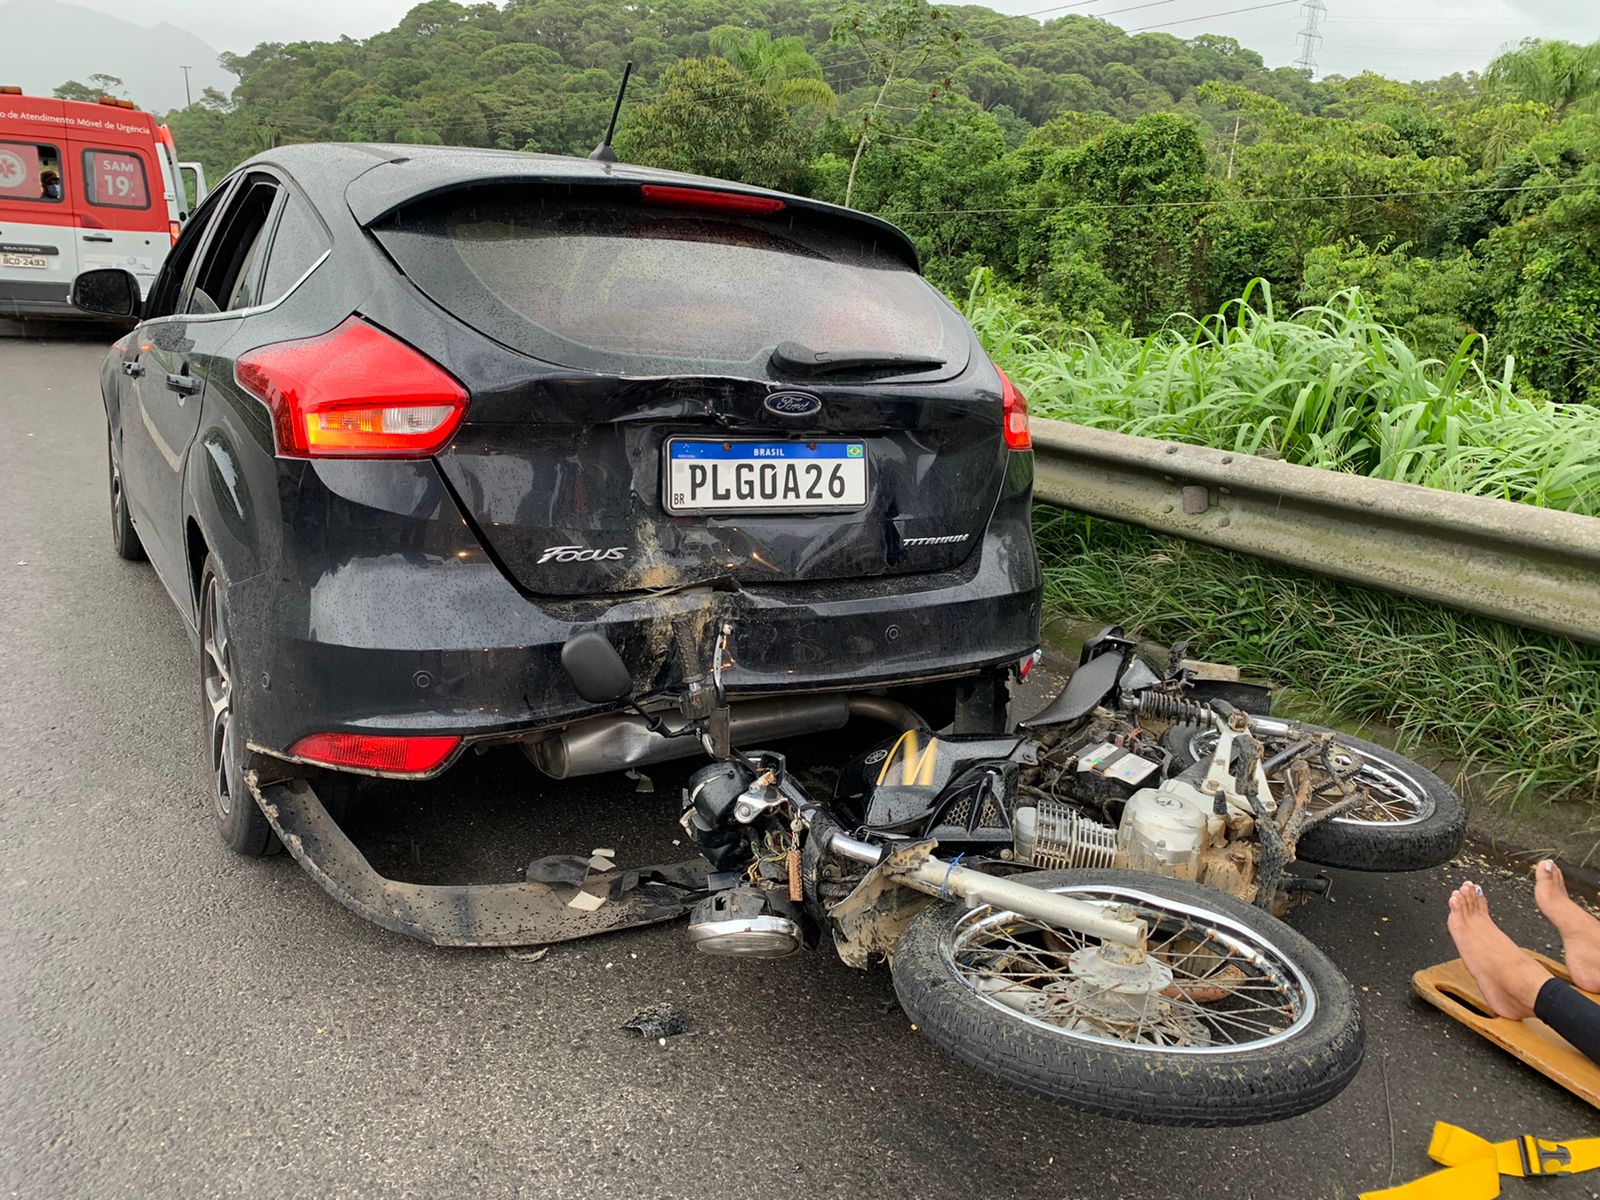 605cfa25-b3fb-41d3-9dda-775231594a90 Pane elétrica em motocicleta provoca acidente na BR-277, em Paranaguá